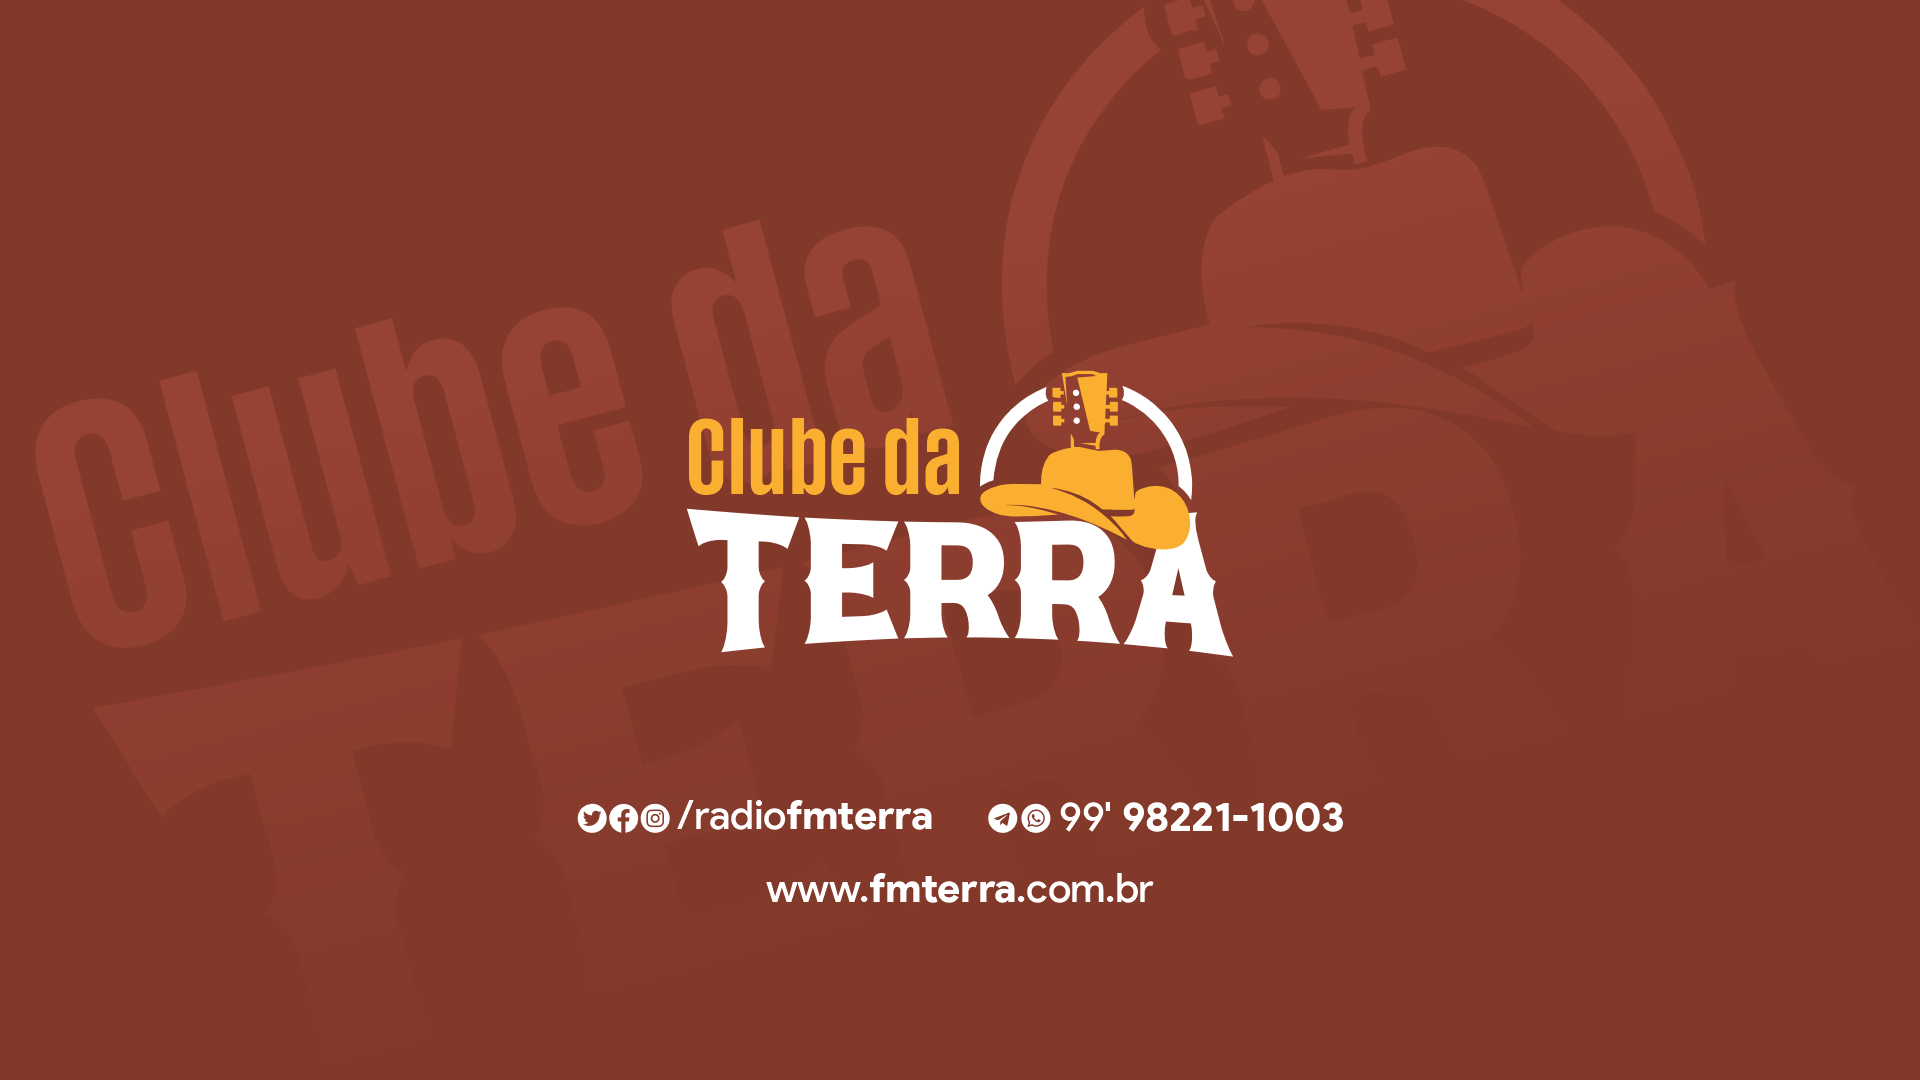 04 CLUBE DA TERRA